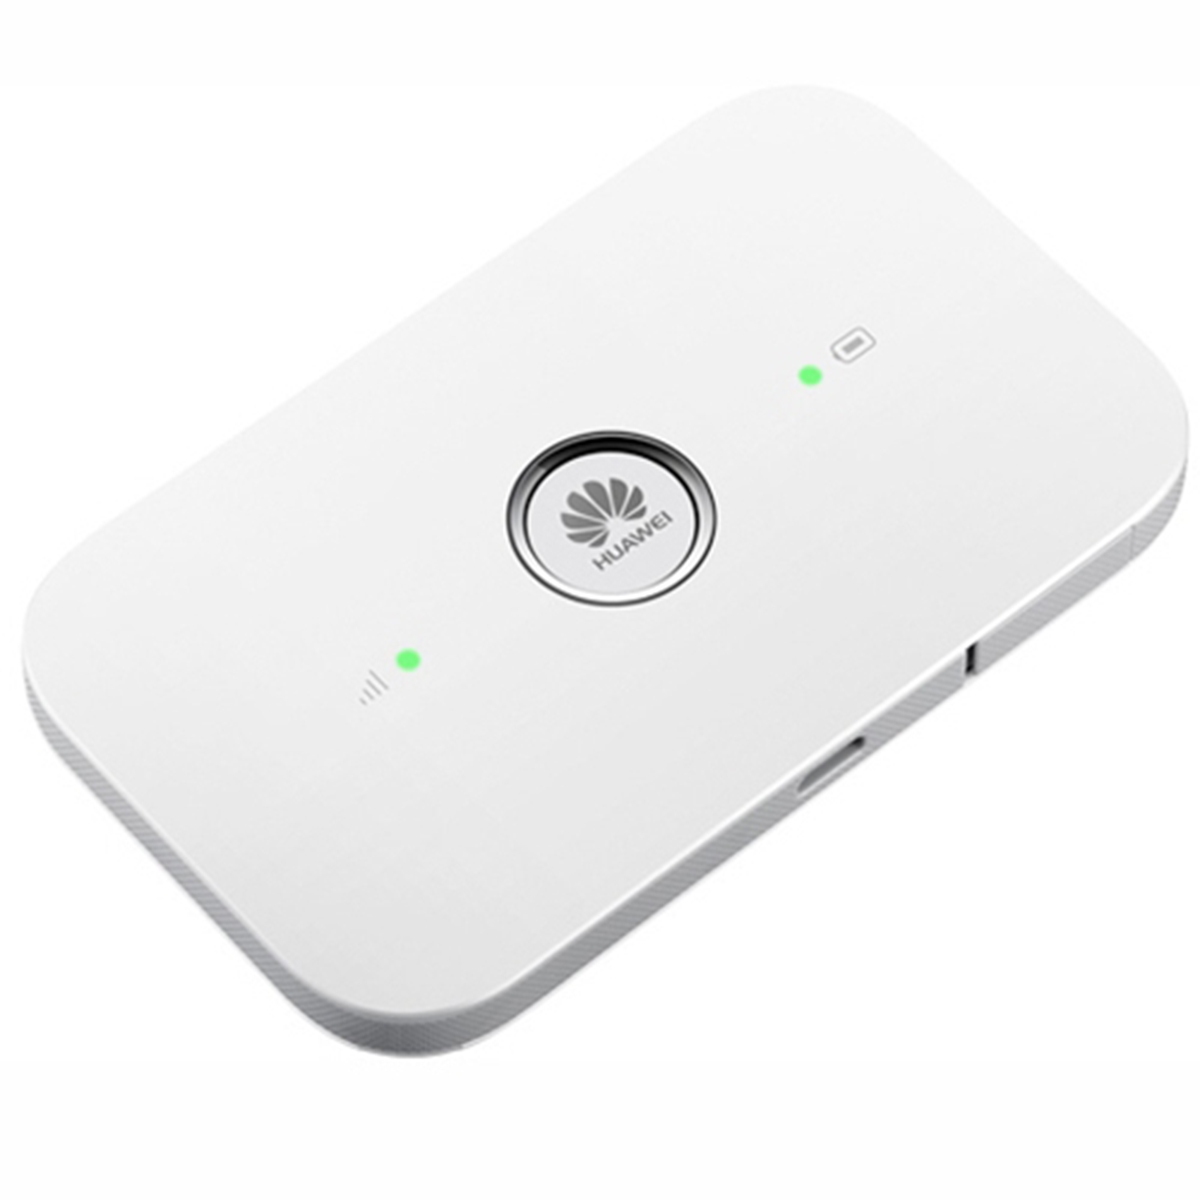 4G роутер WiFi с SIM-картой Huawei e5573s-320, есть возможность подключения внешней антенны с технологией MIMO. Вид роутера спереди и с торцов. Купить на сайте Marketnet